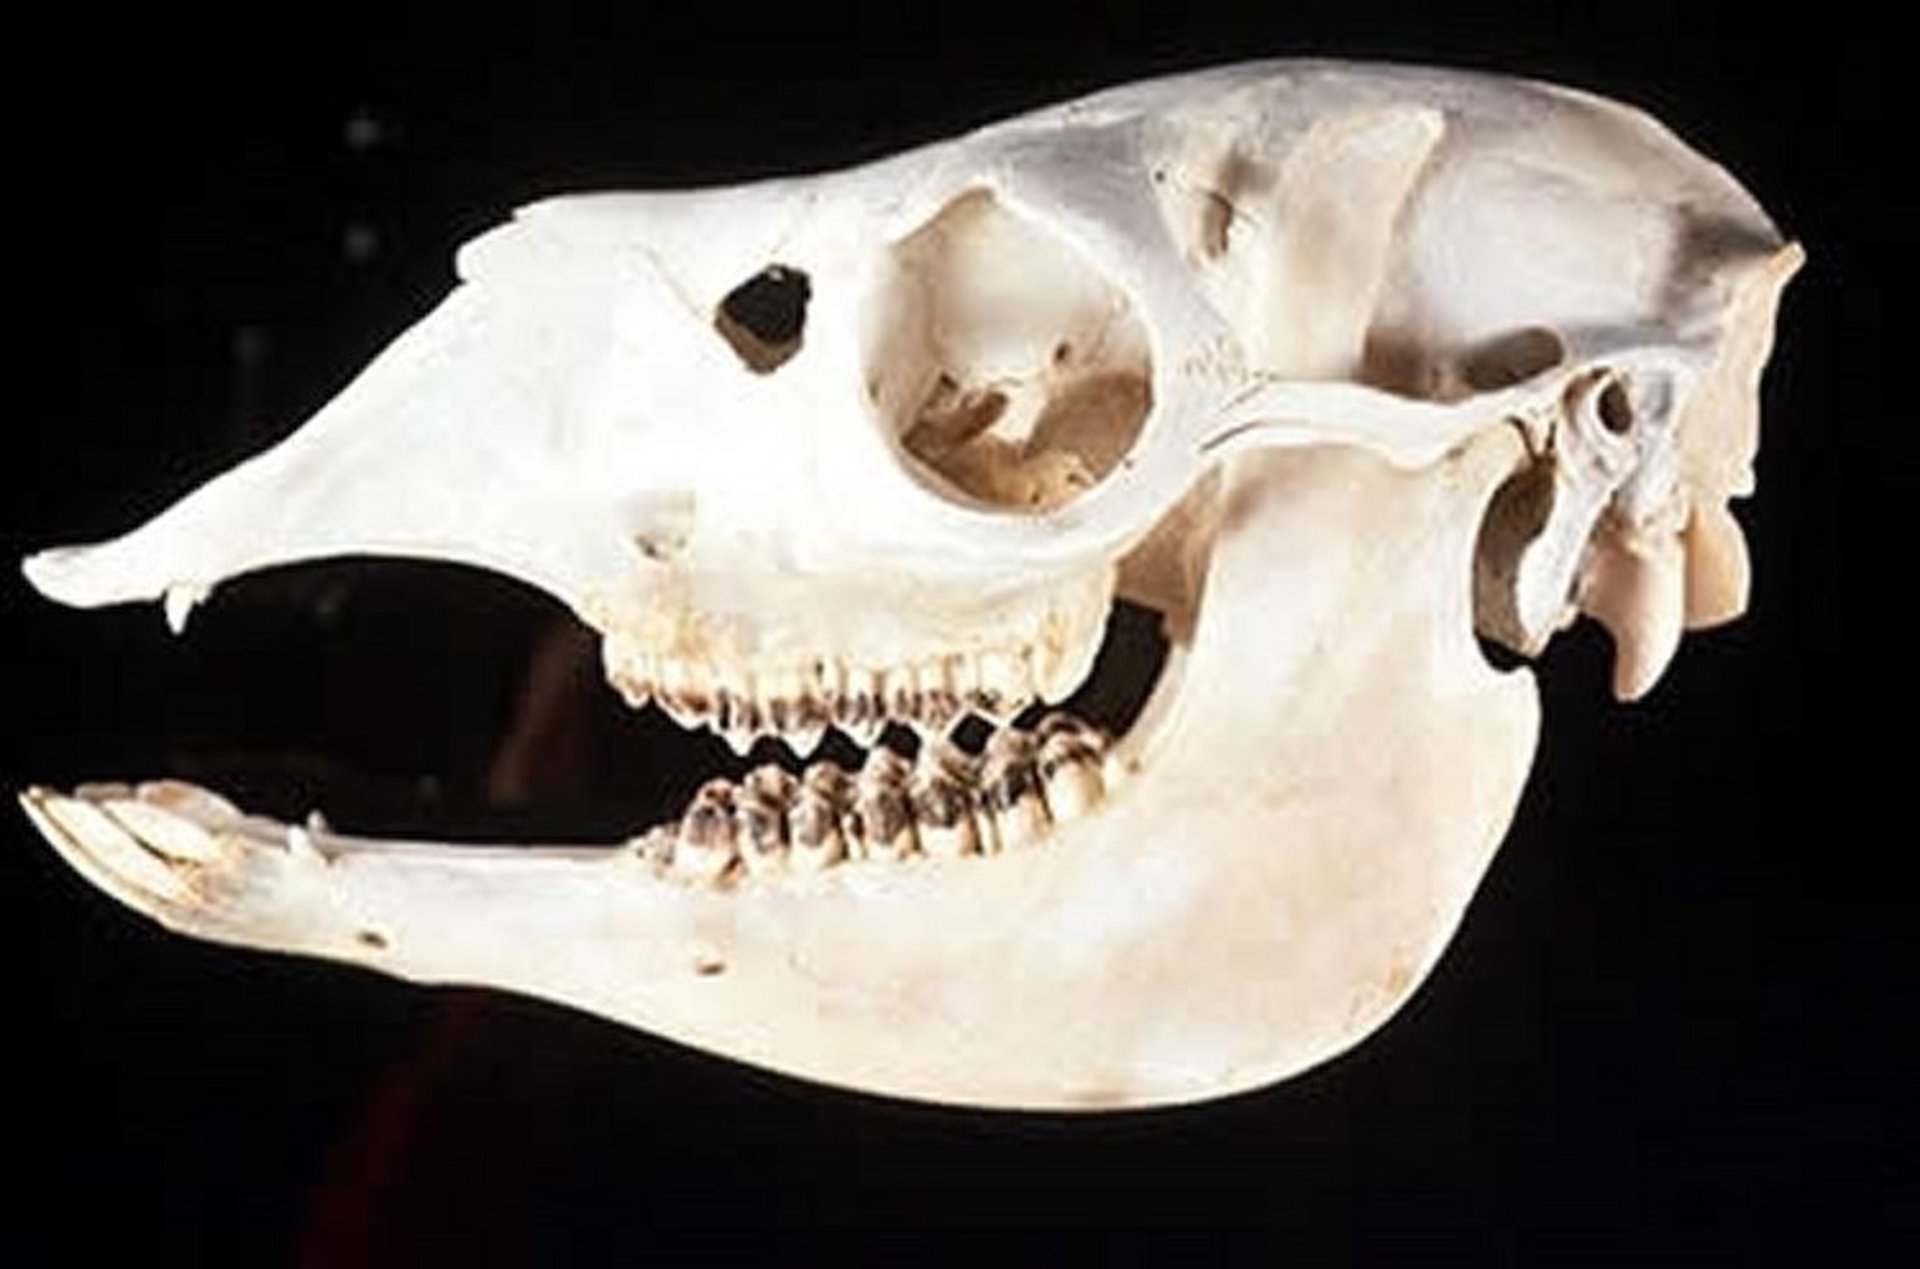 Skull and teeth, llama